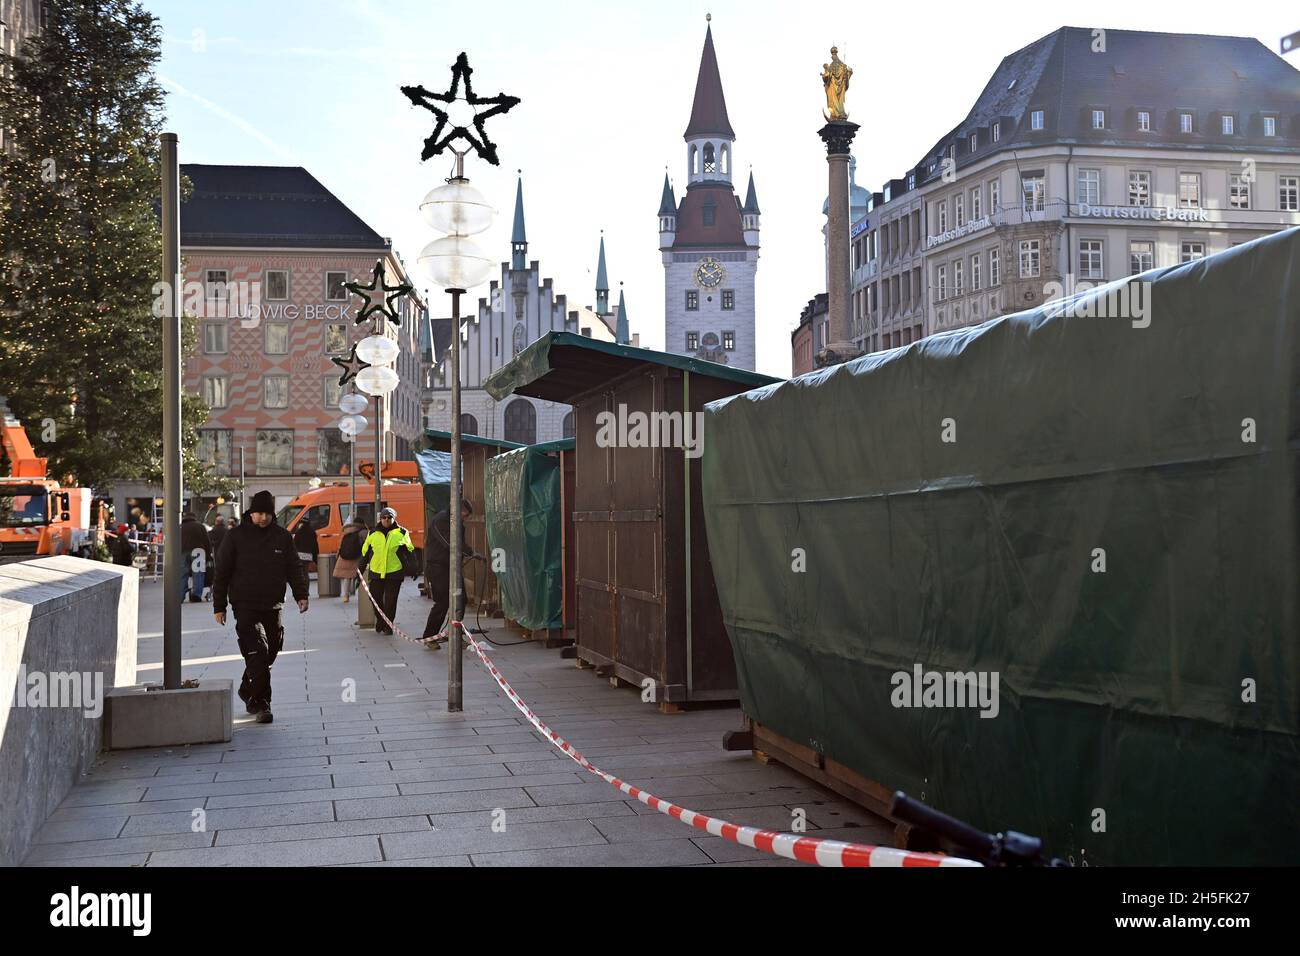 Attualmente sono in fase di installazione stalle e cabine. Costruzione del mercato di Natale a Marienplatz a Monaco il 9 novembre 2021. Foto Stock